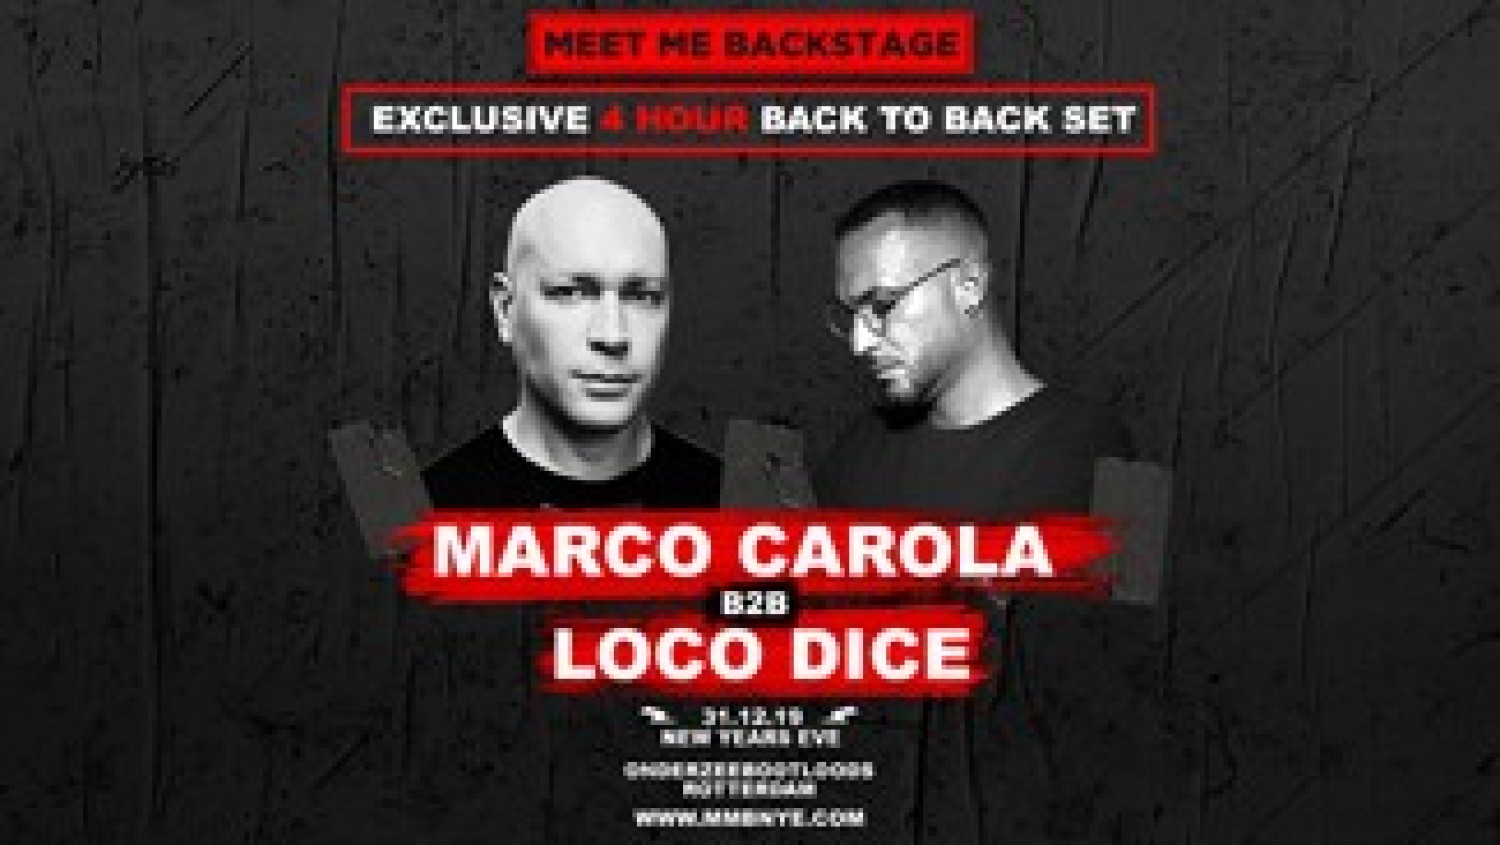 Party nieuws: Marco Carola en Loco Dice tijdens Meet Me Backstage